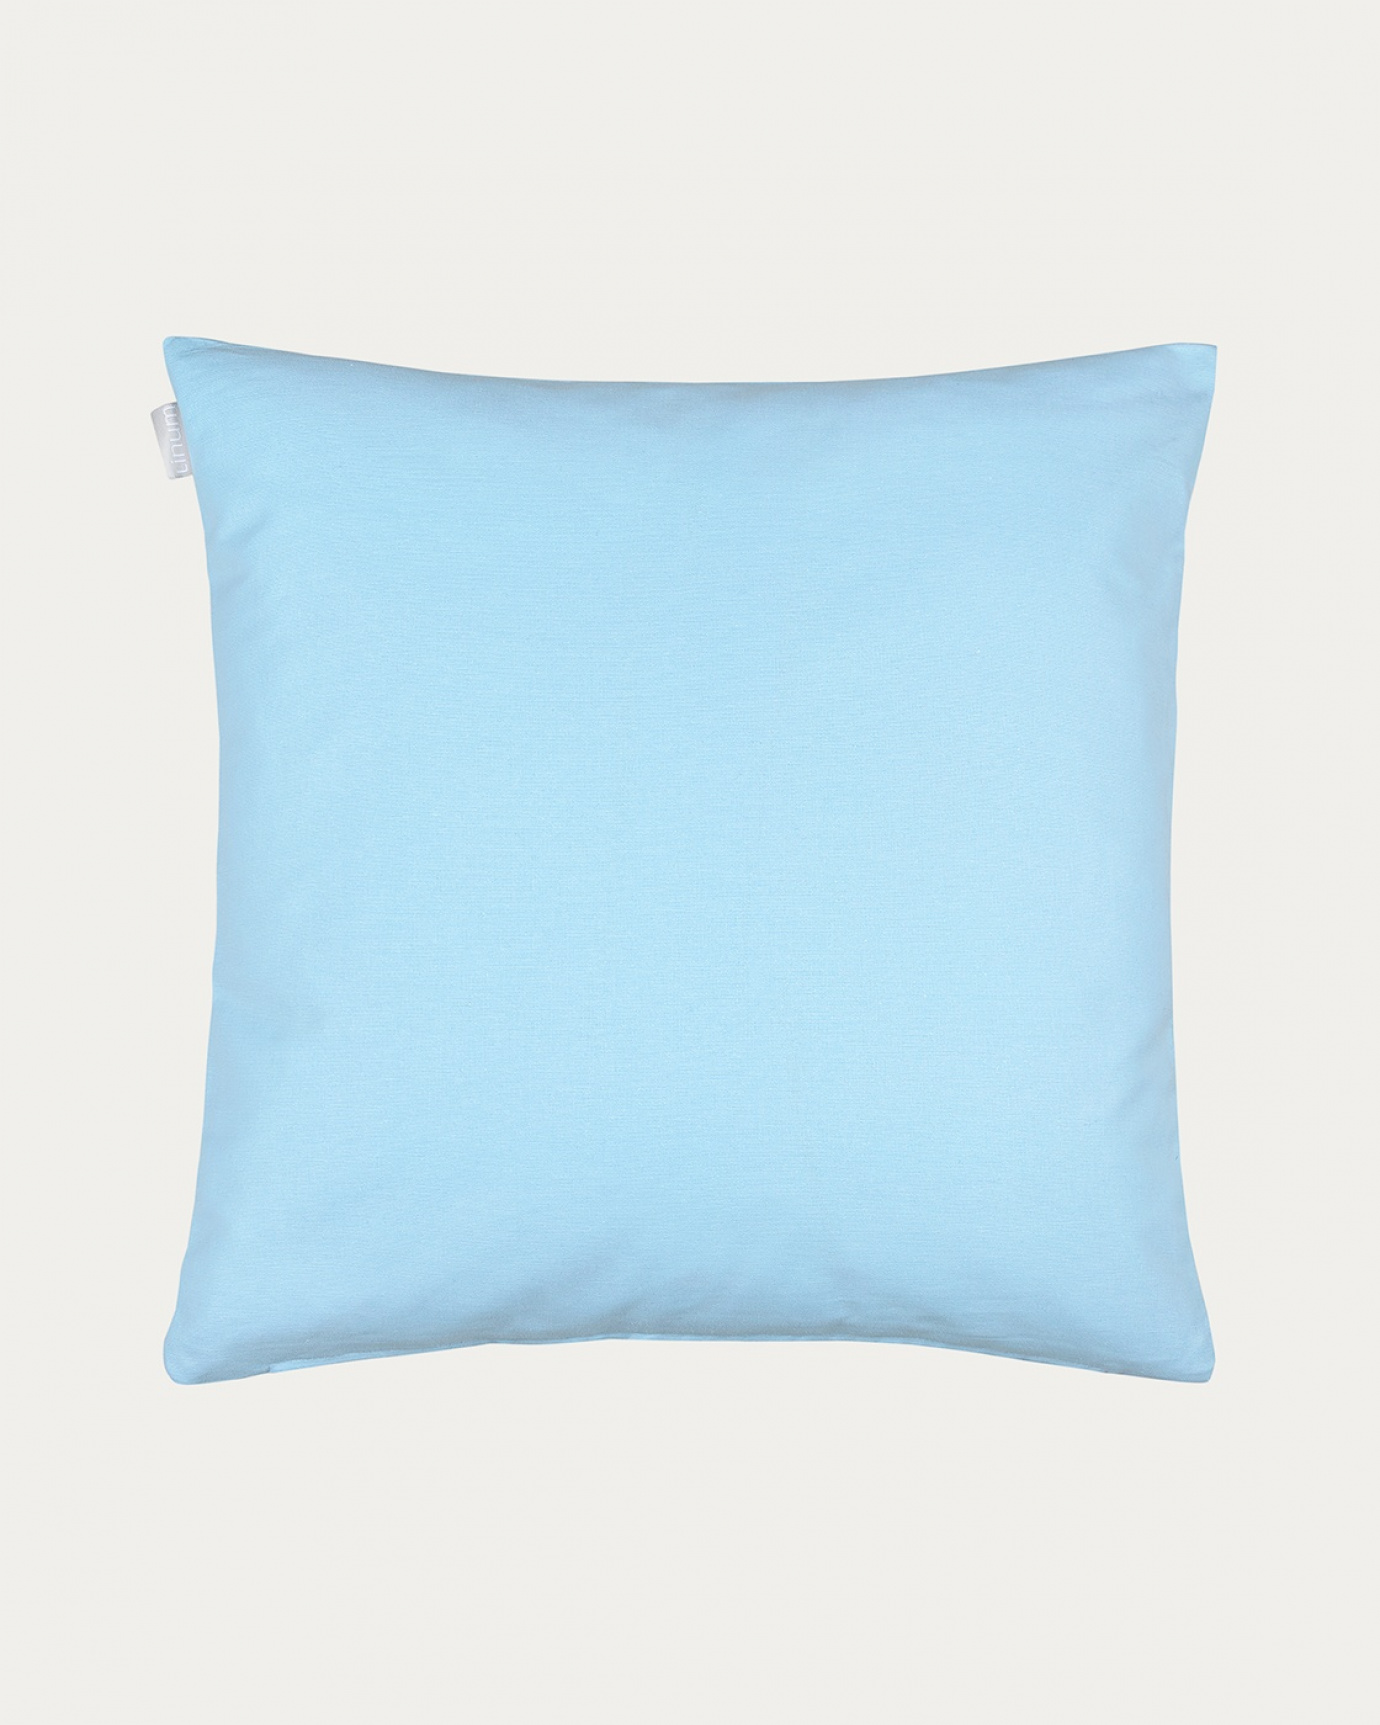 Immagine prodotto blu cielo chiaro ANNABELL copricuscini in morbido cotone di LINUM DESIGN. Dimensioni 50x50 cm.